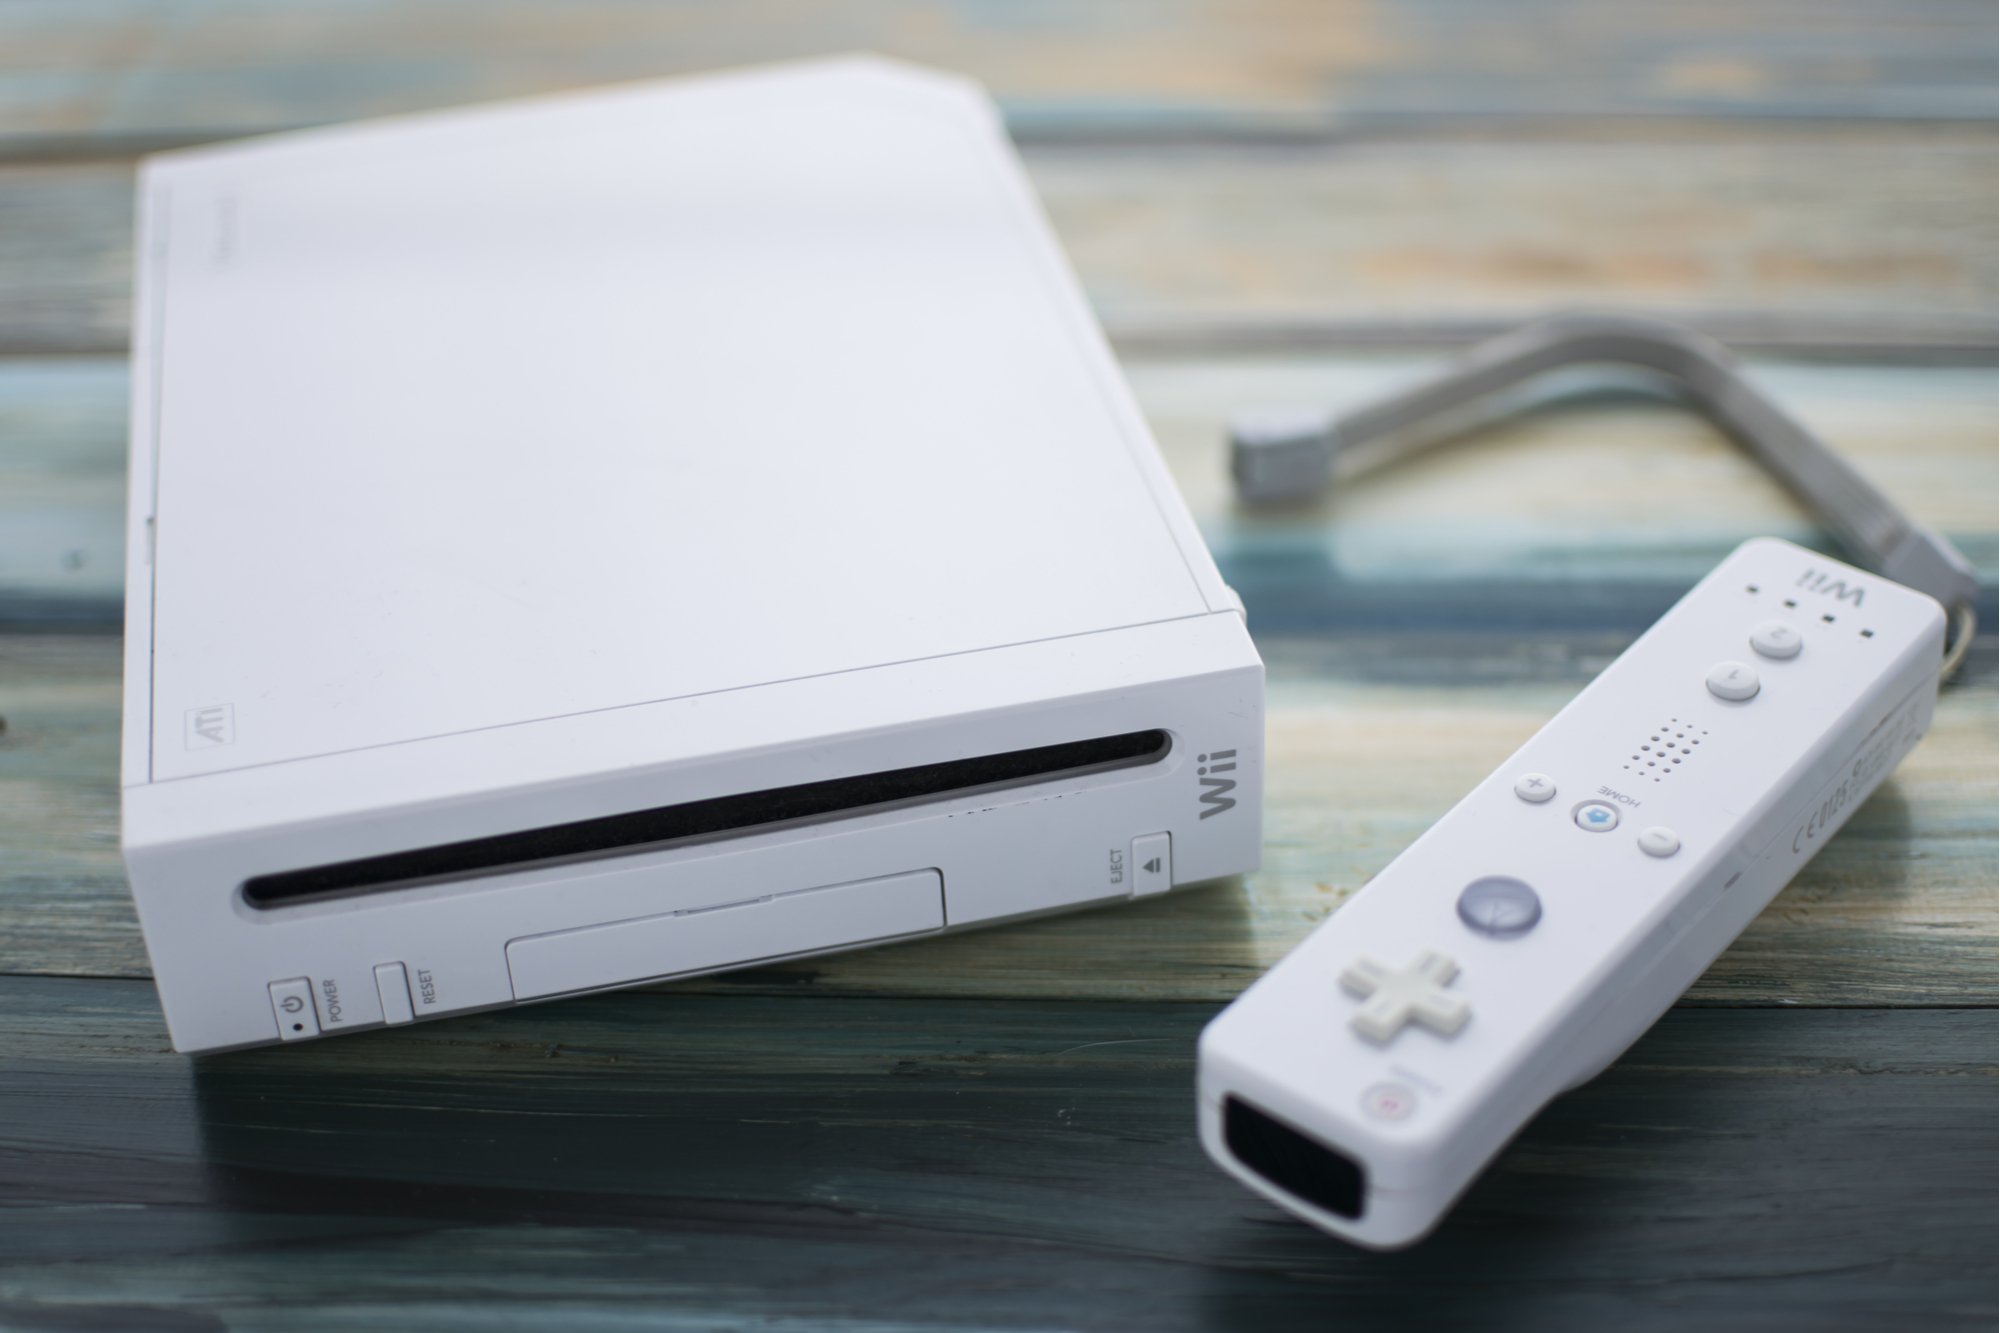 Nintendo : des codes sources et schéma de la Wii fuitent... Des clones à venir ?